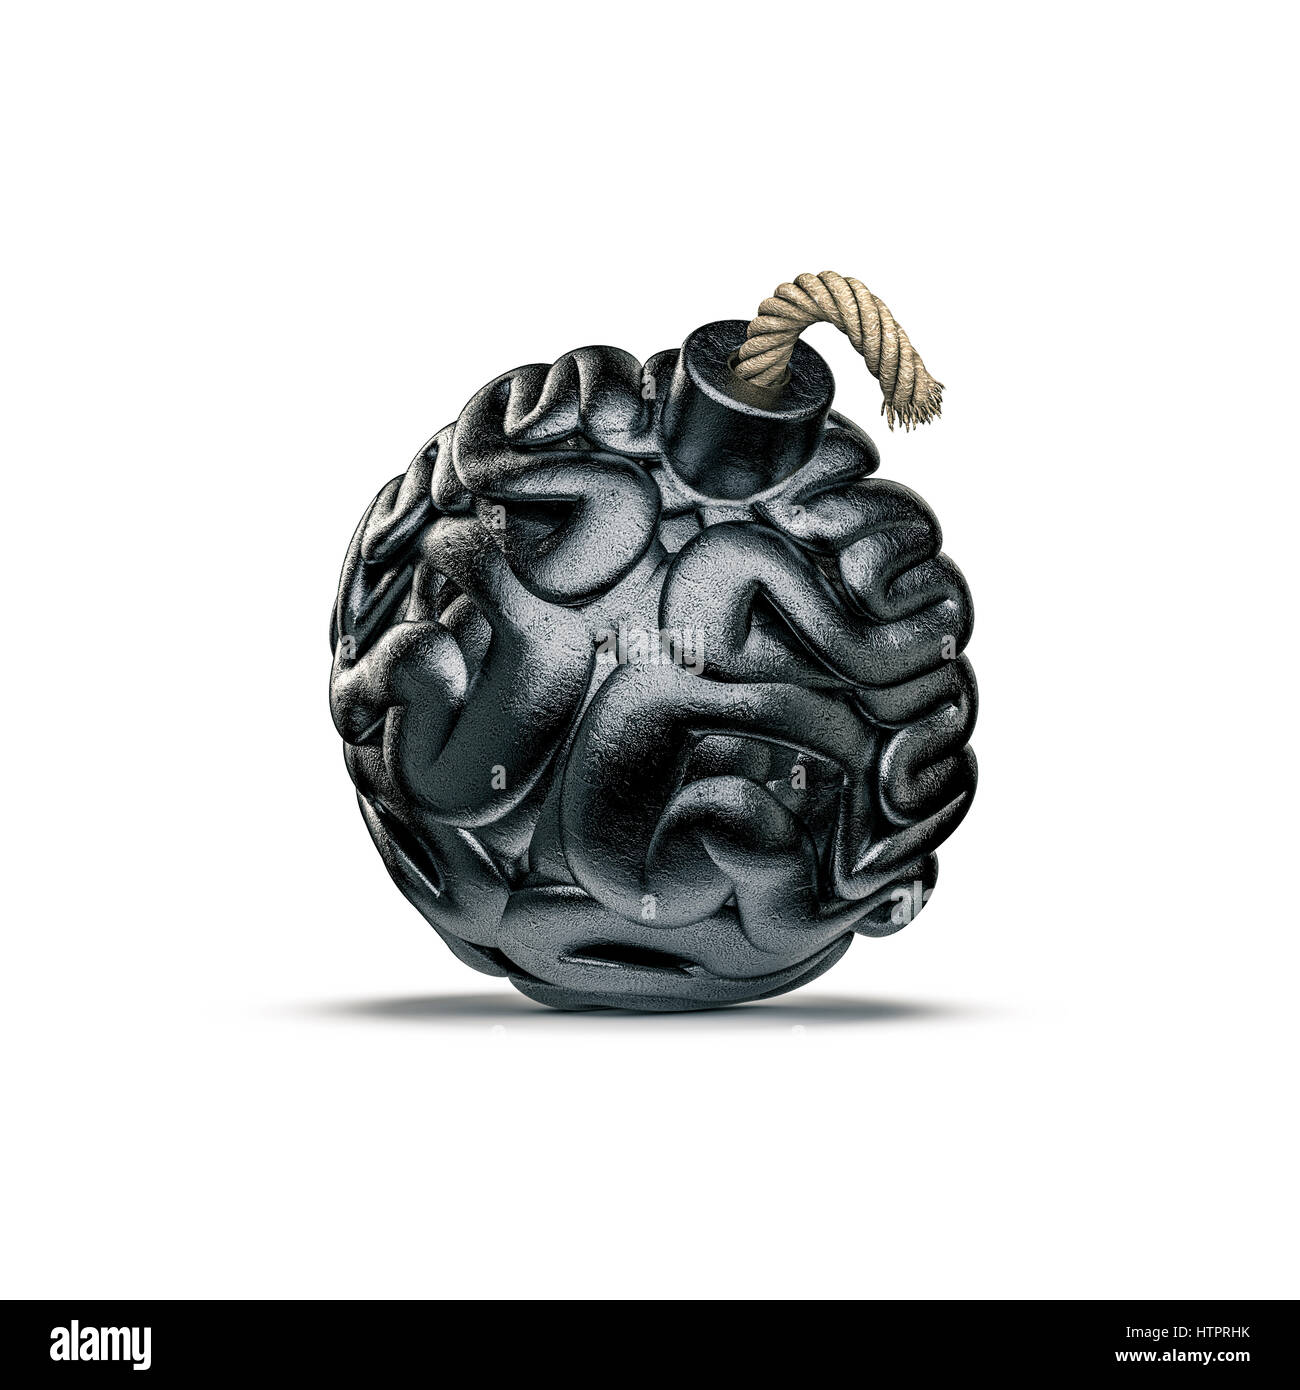 Gehirn-Bombe-Konzept / 3D-Illustration Metall Bombe mit Sicherung geprägt wie menschliches Gehirn Stockfoto